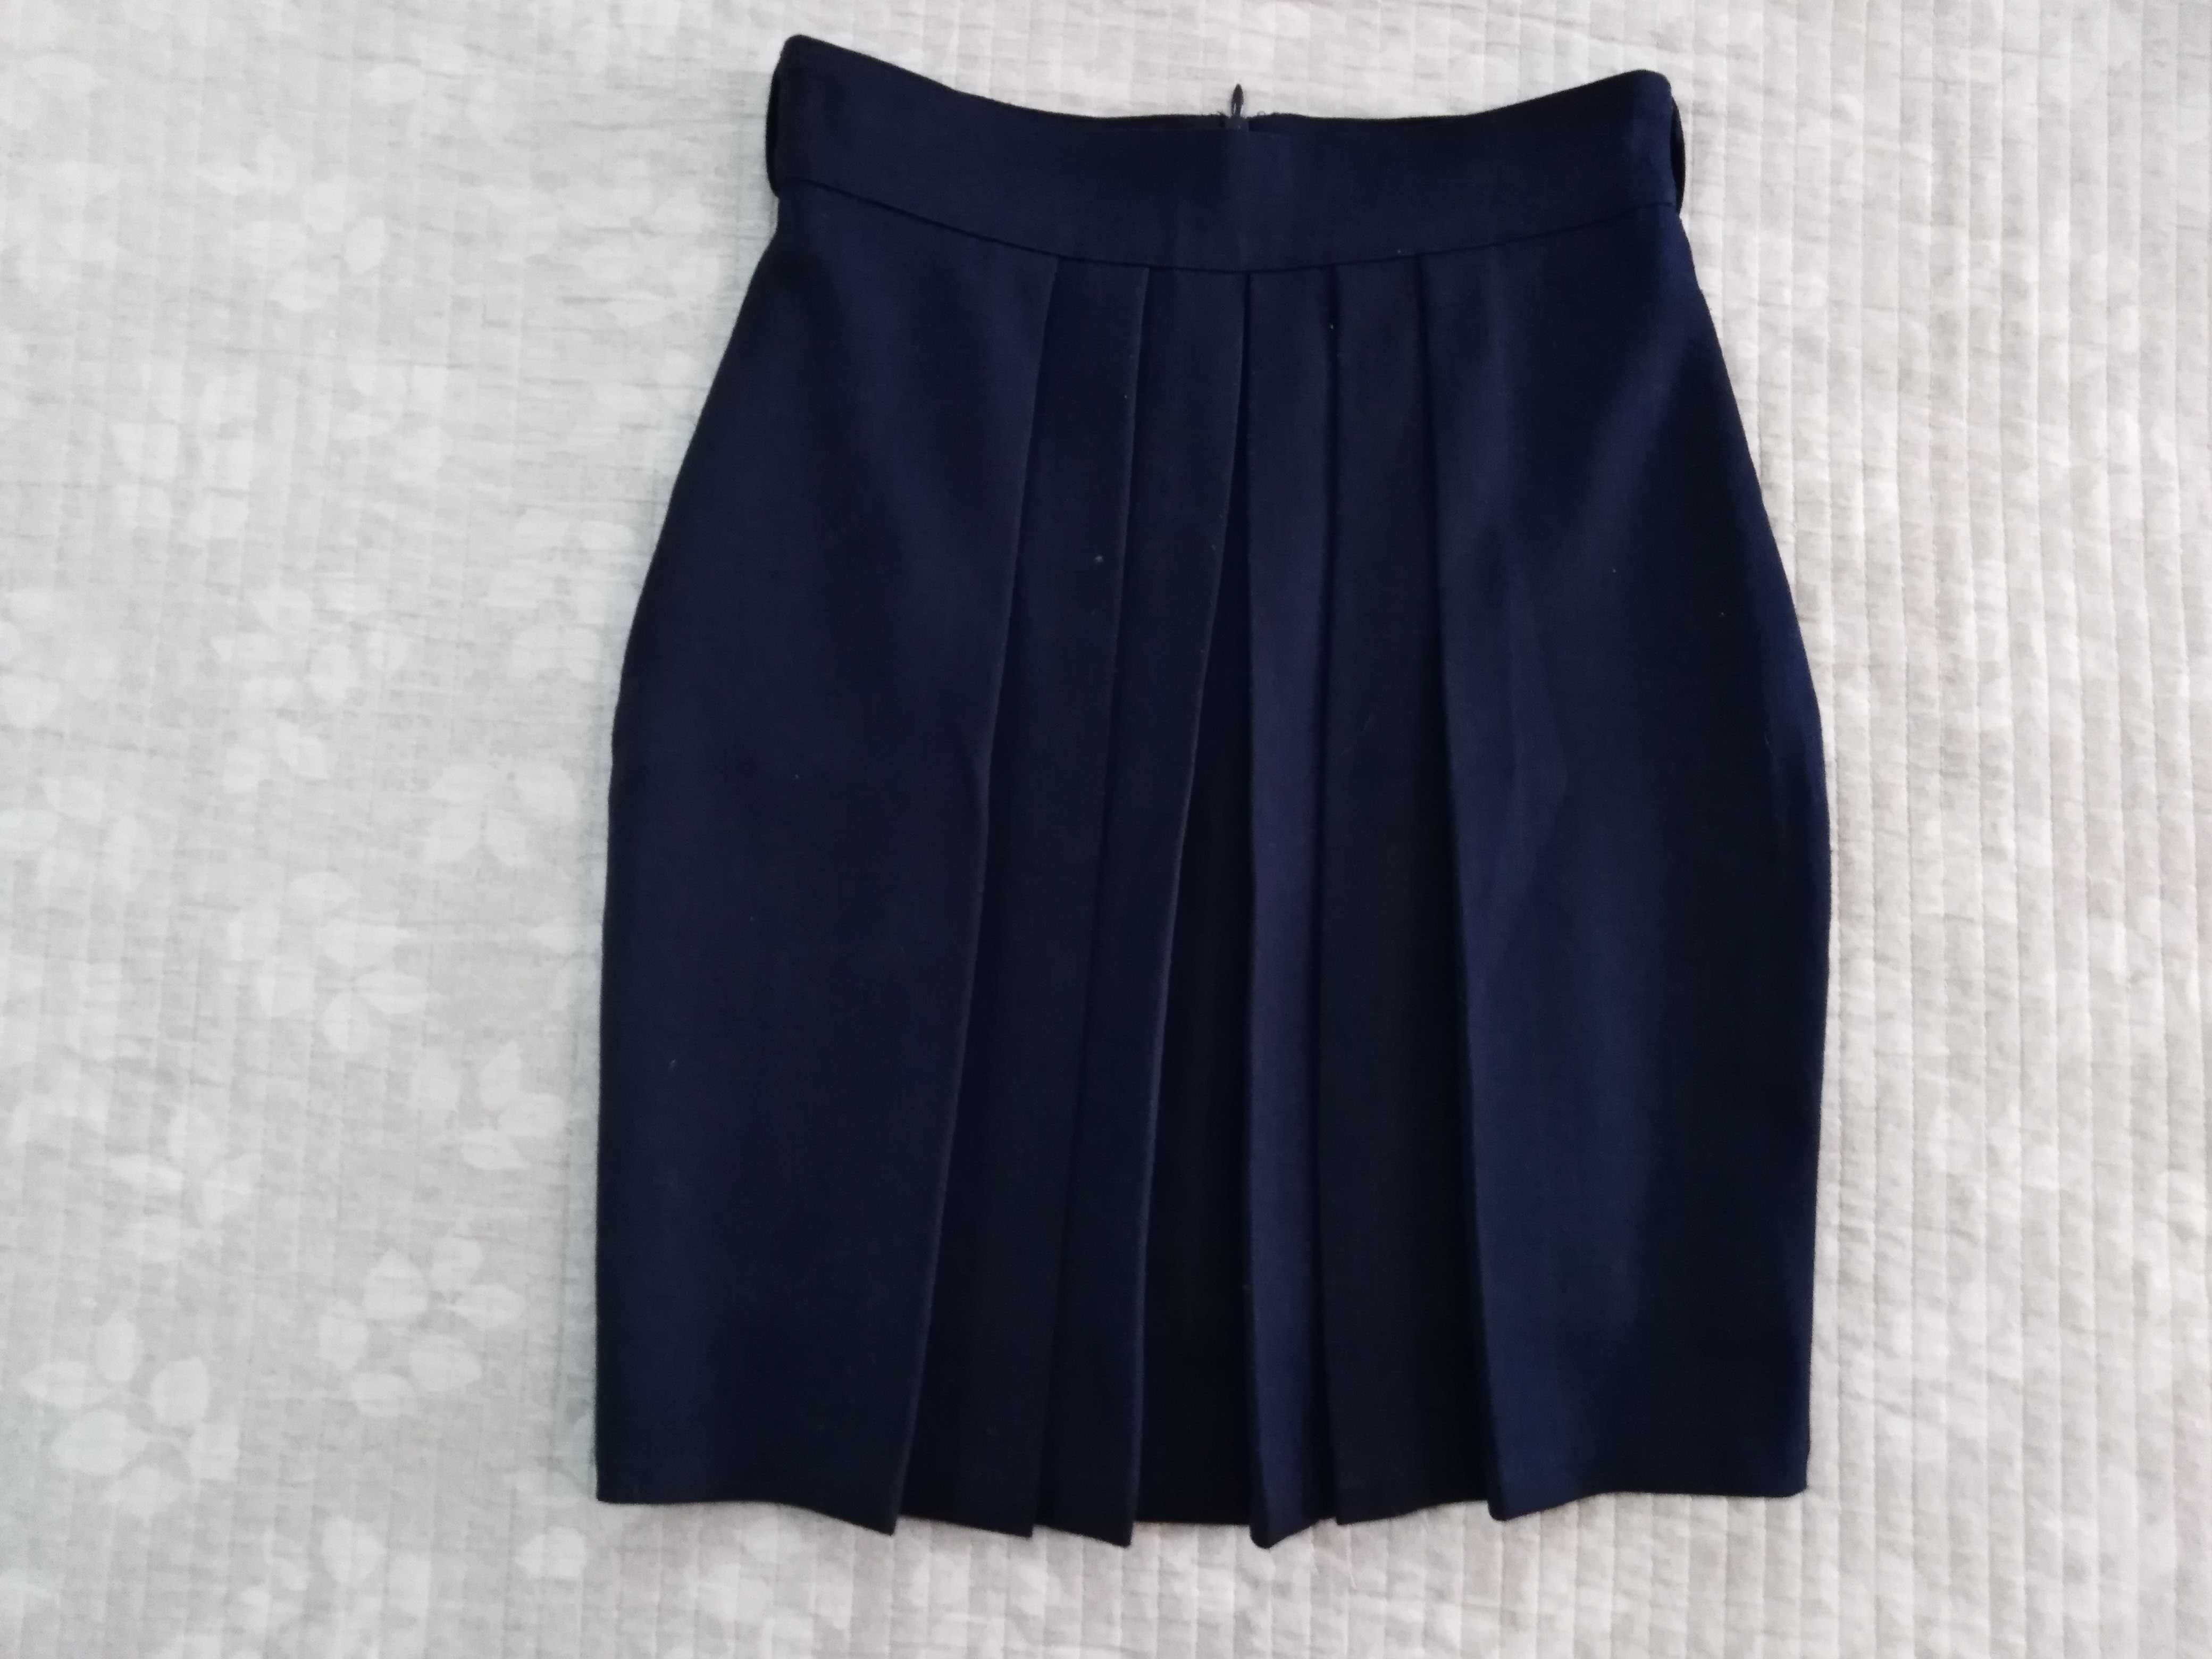 Продам юбку состояние отличное, размер 146 (8-11 лет) цвет тёмно-синий